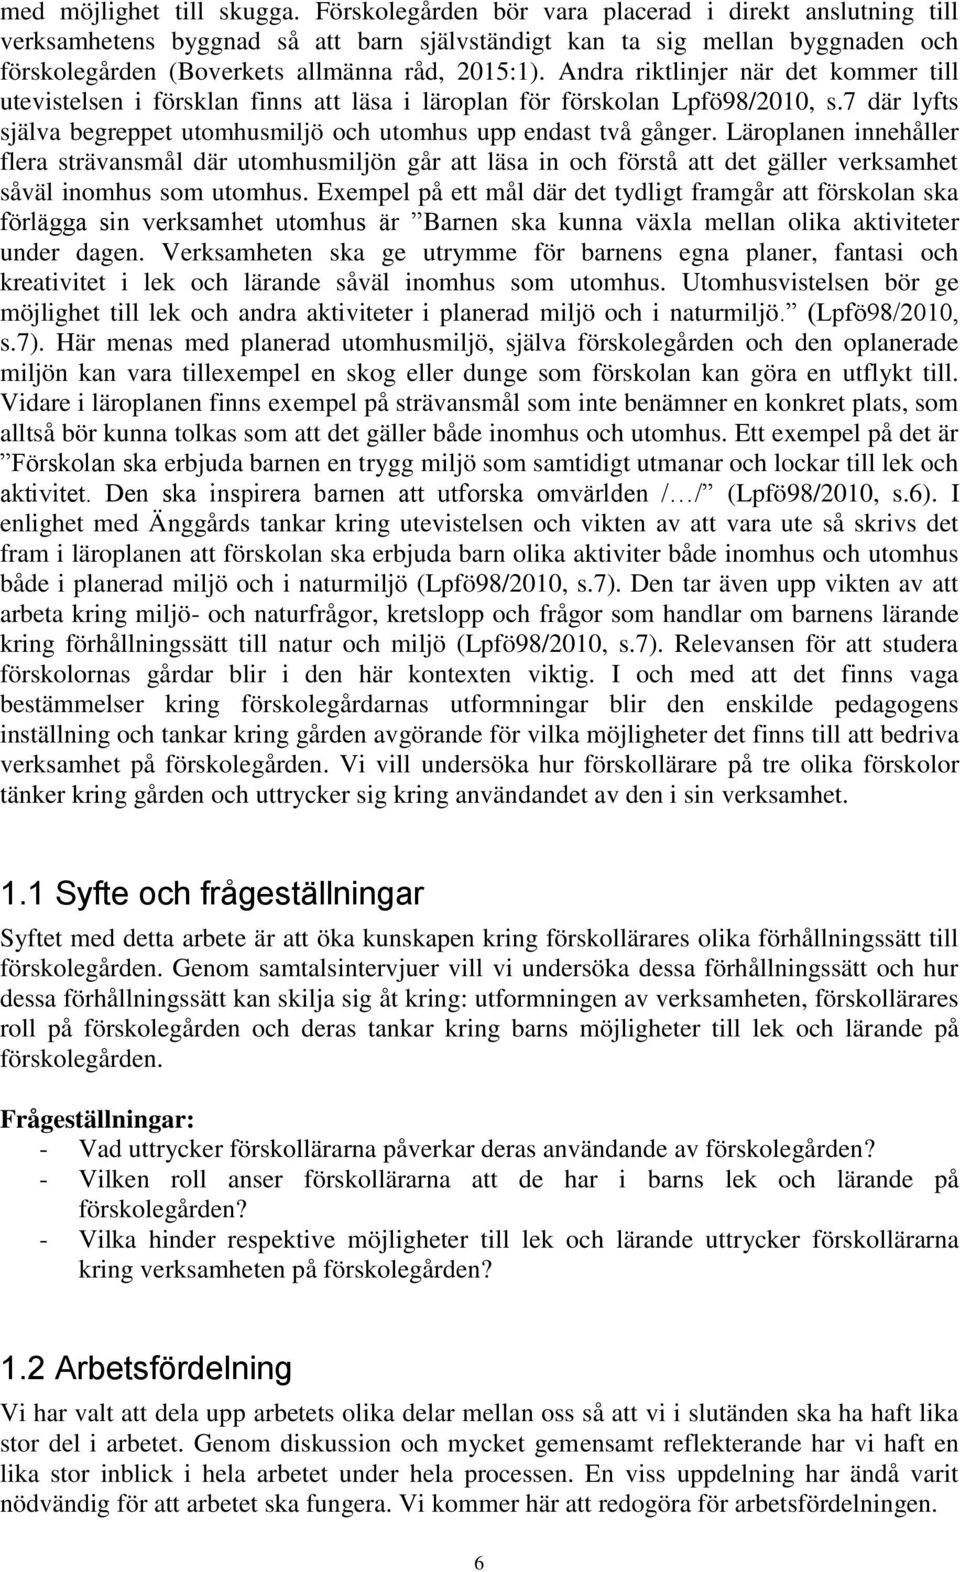 Andra riktlinjer när det kommer till utevistelsen i försklan finns att läsa i läroplan för förskolan Lpfö98/2010, s.7 där lyfts själva begreppet utomhusmiljö och utomhus upp endast två gånger.